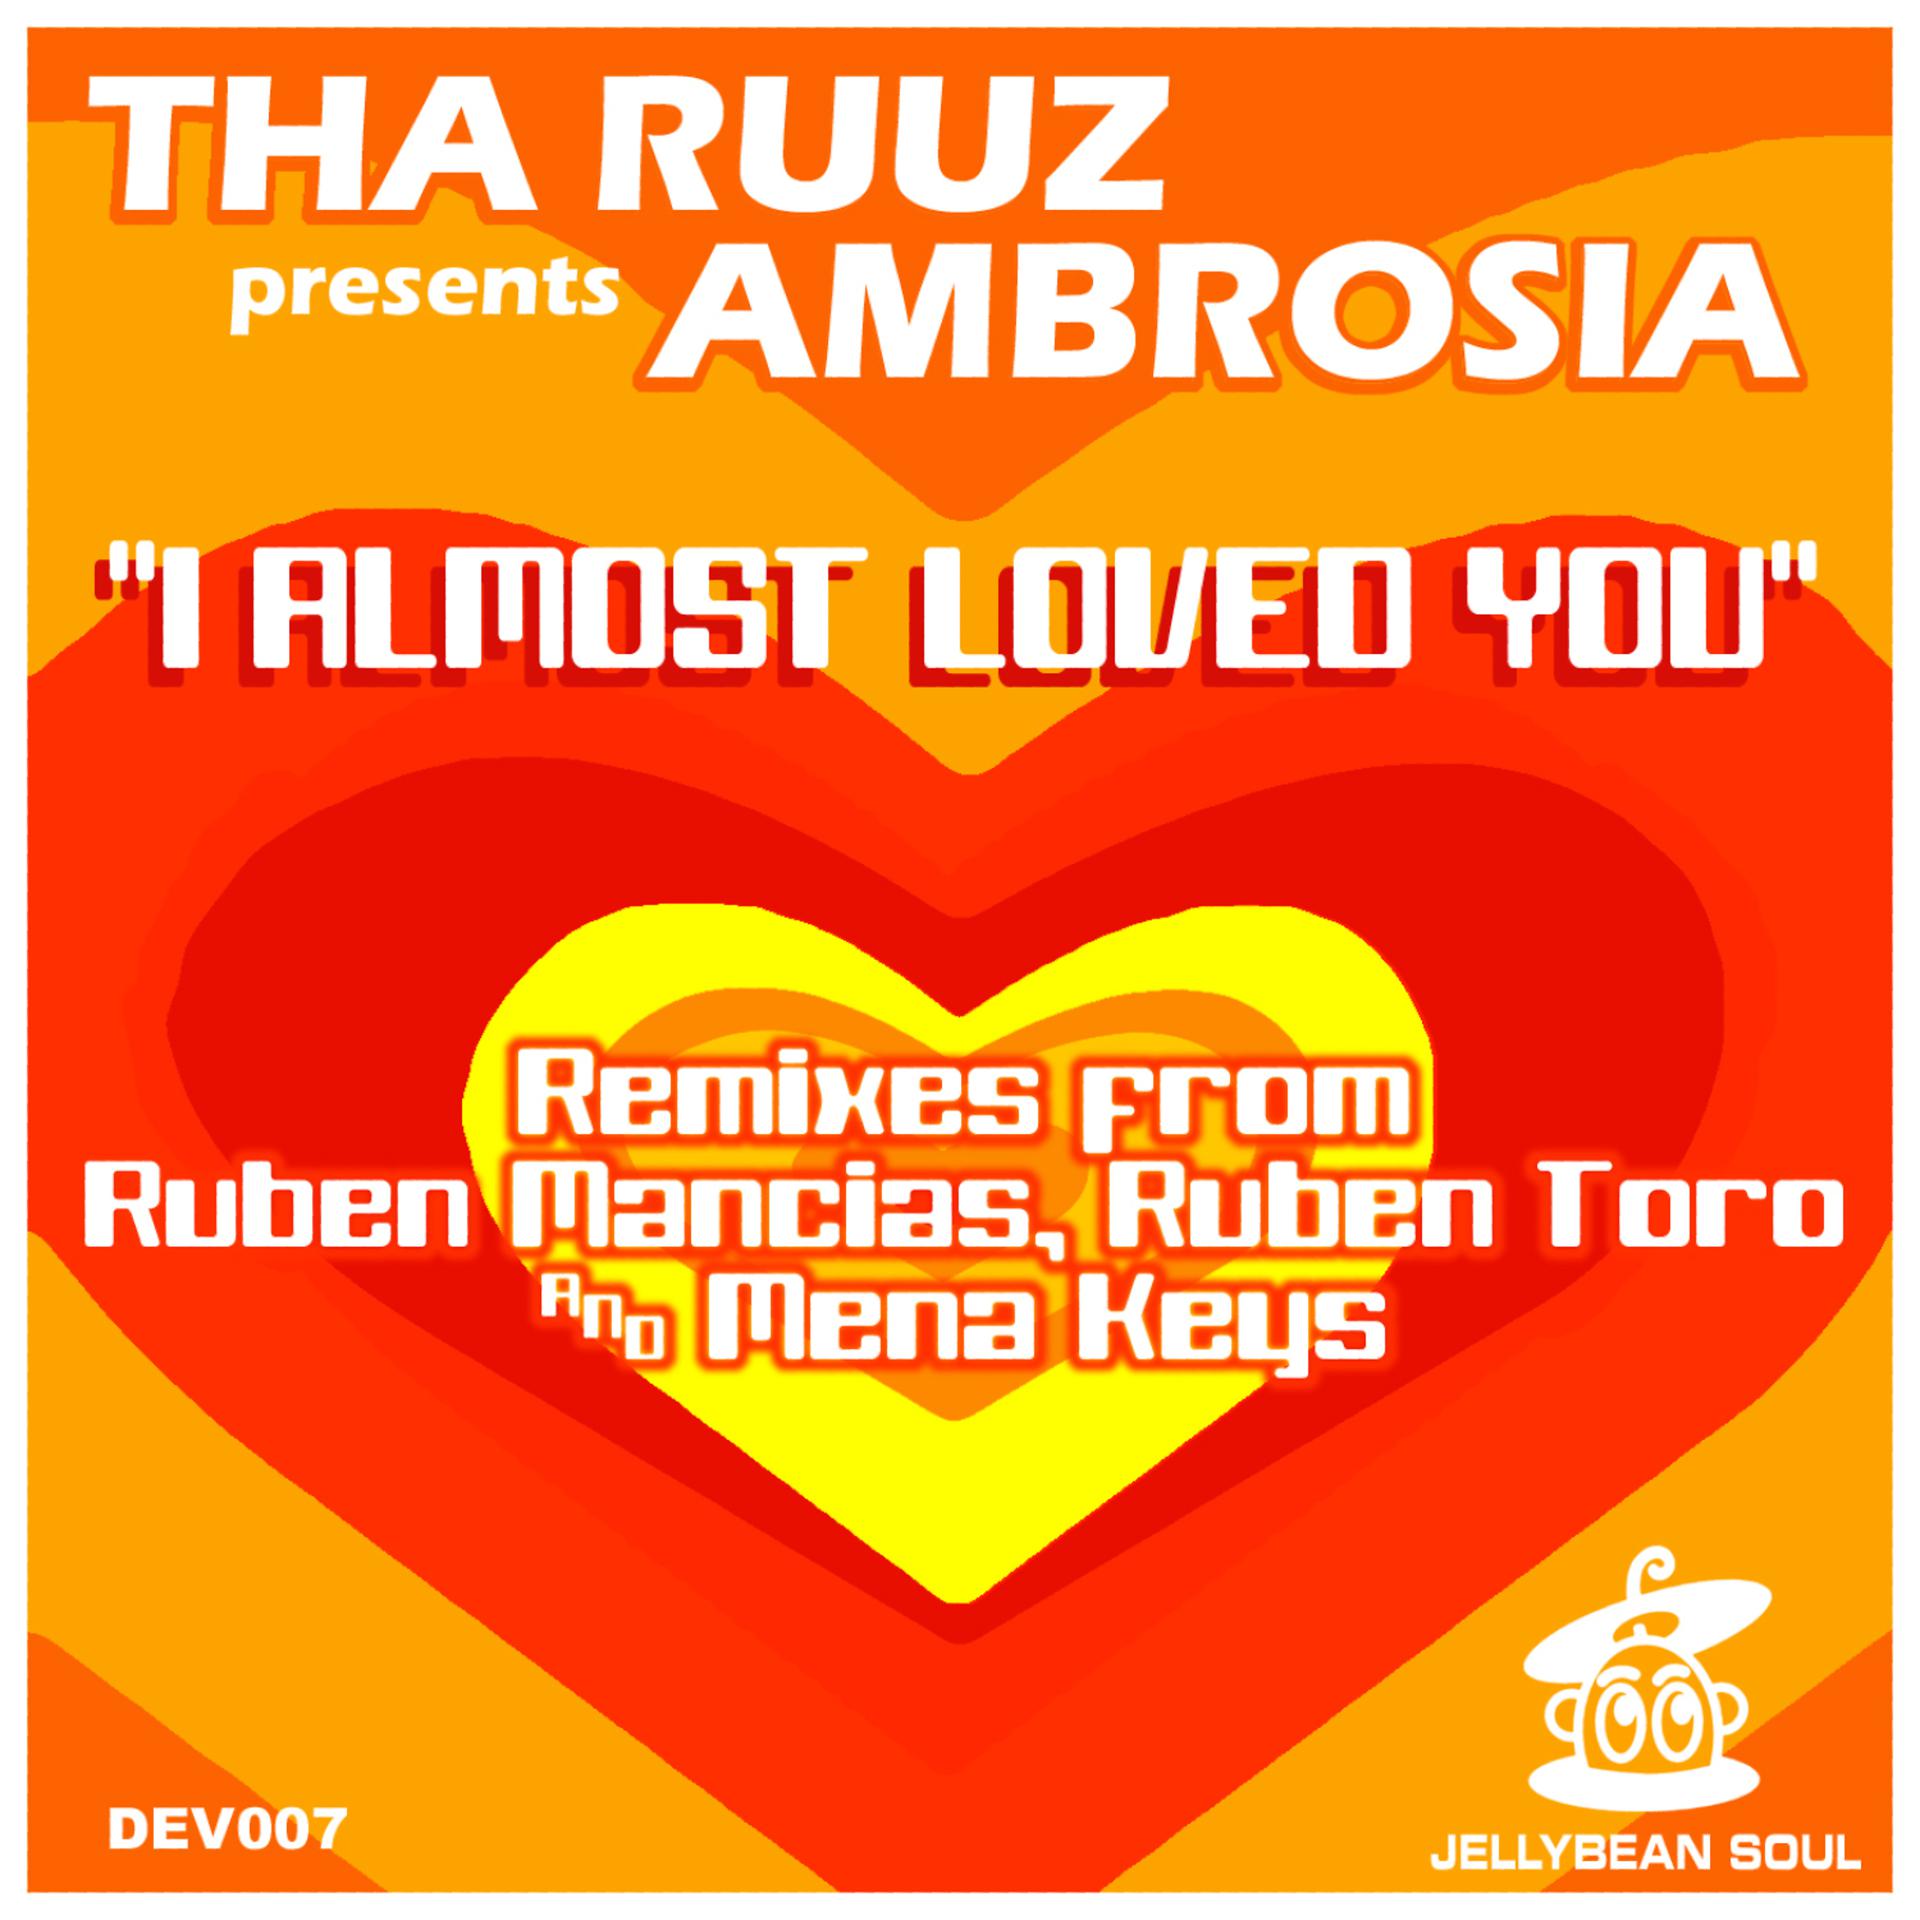 Постер к треку Ambrosia, Tha Ruuz - I Almost Loved You